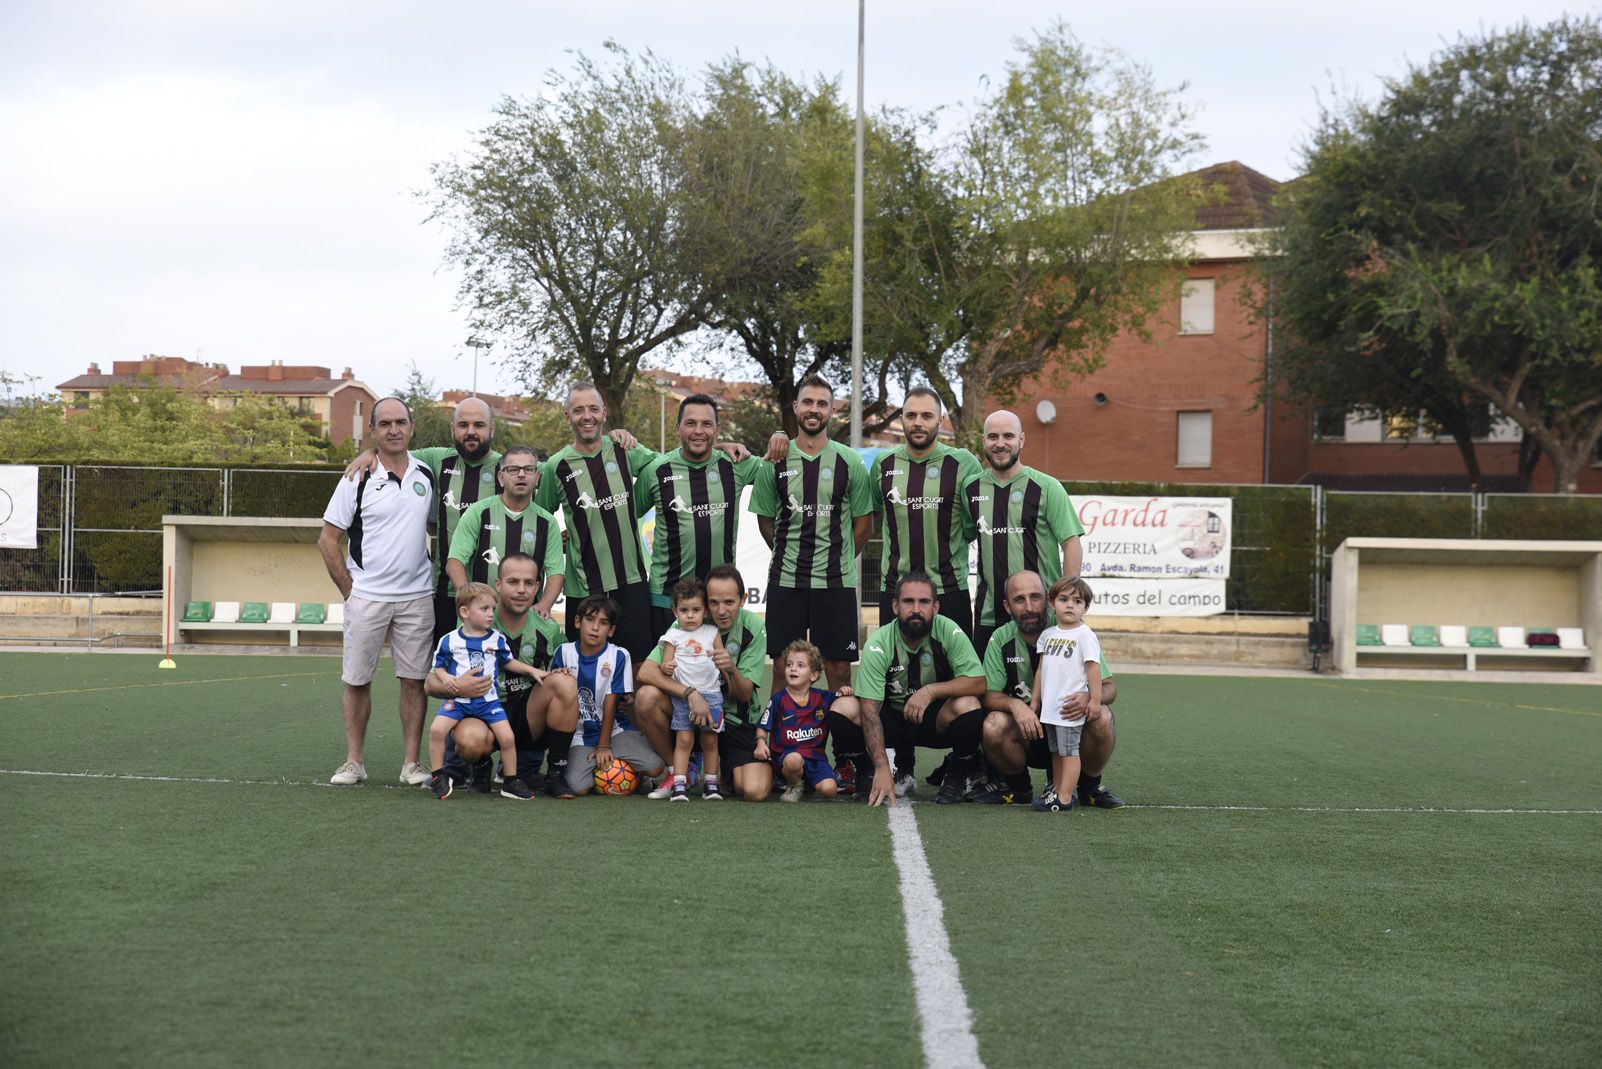 Presentació dels equips CFU Mira-sol BACO. Foto: Bernat Millet.